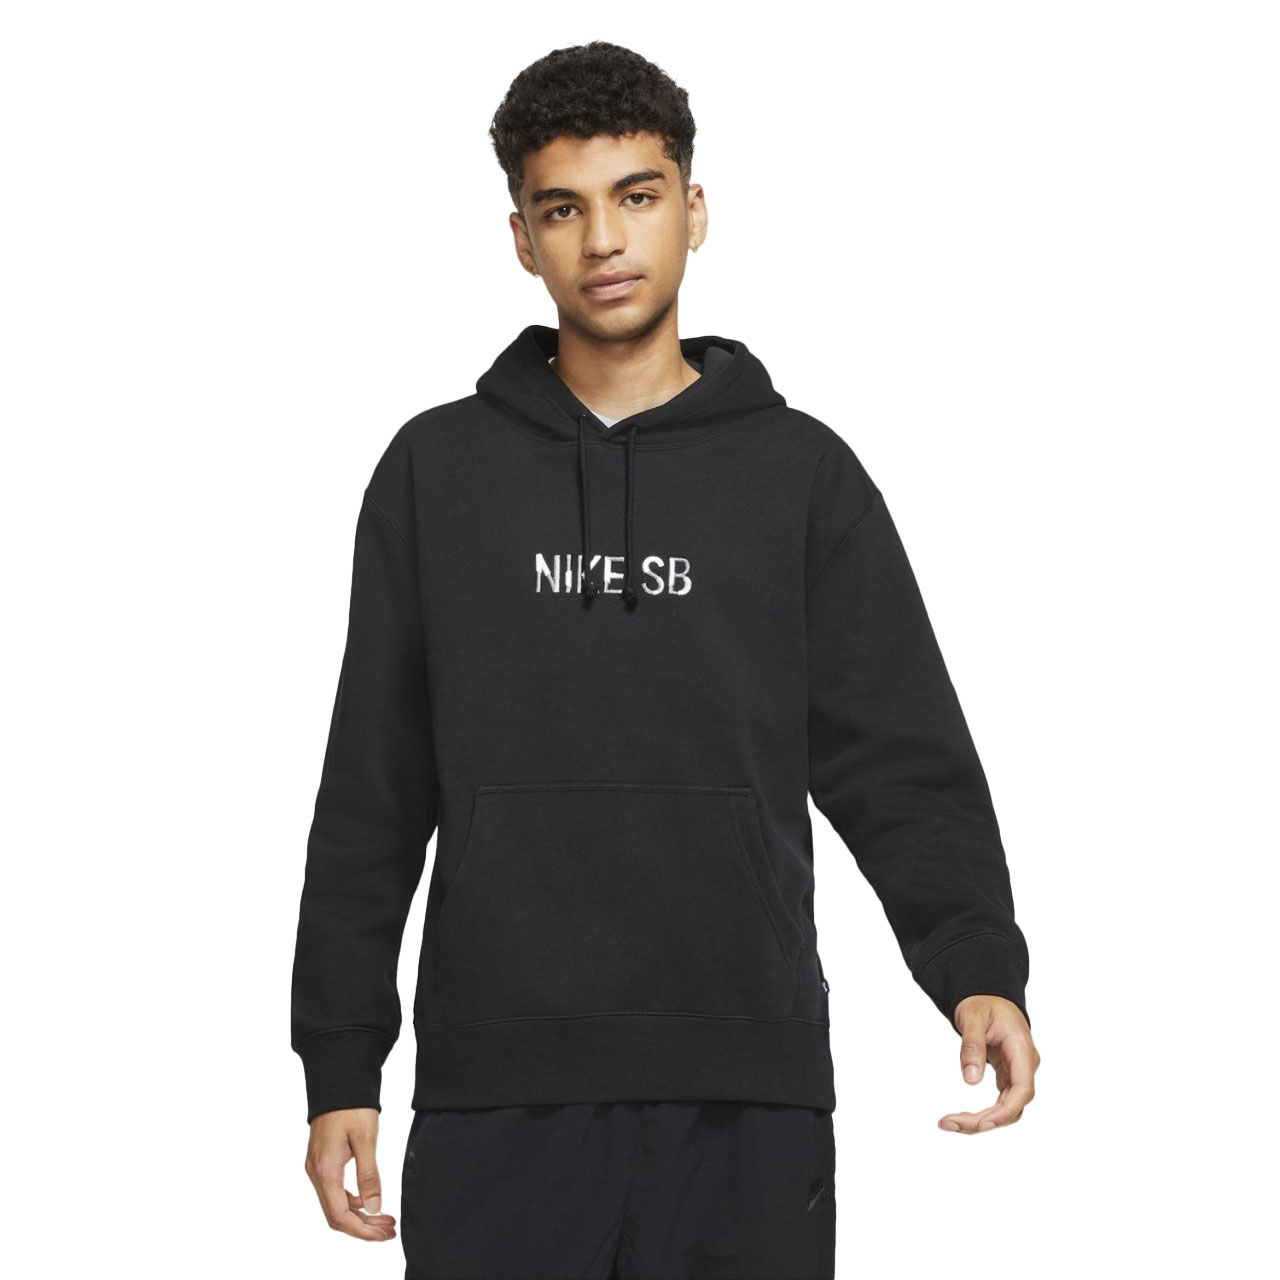 Nike SB Premium Fleece Skate Hoodie Black